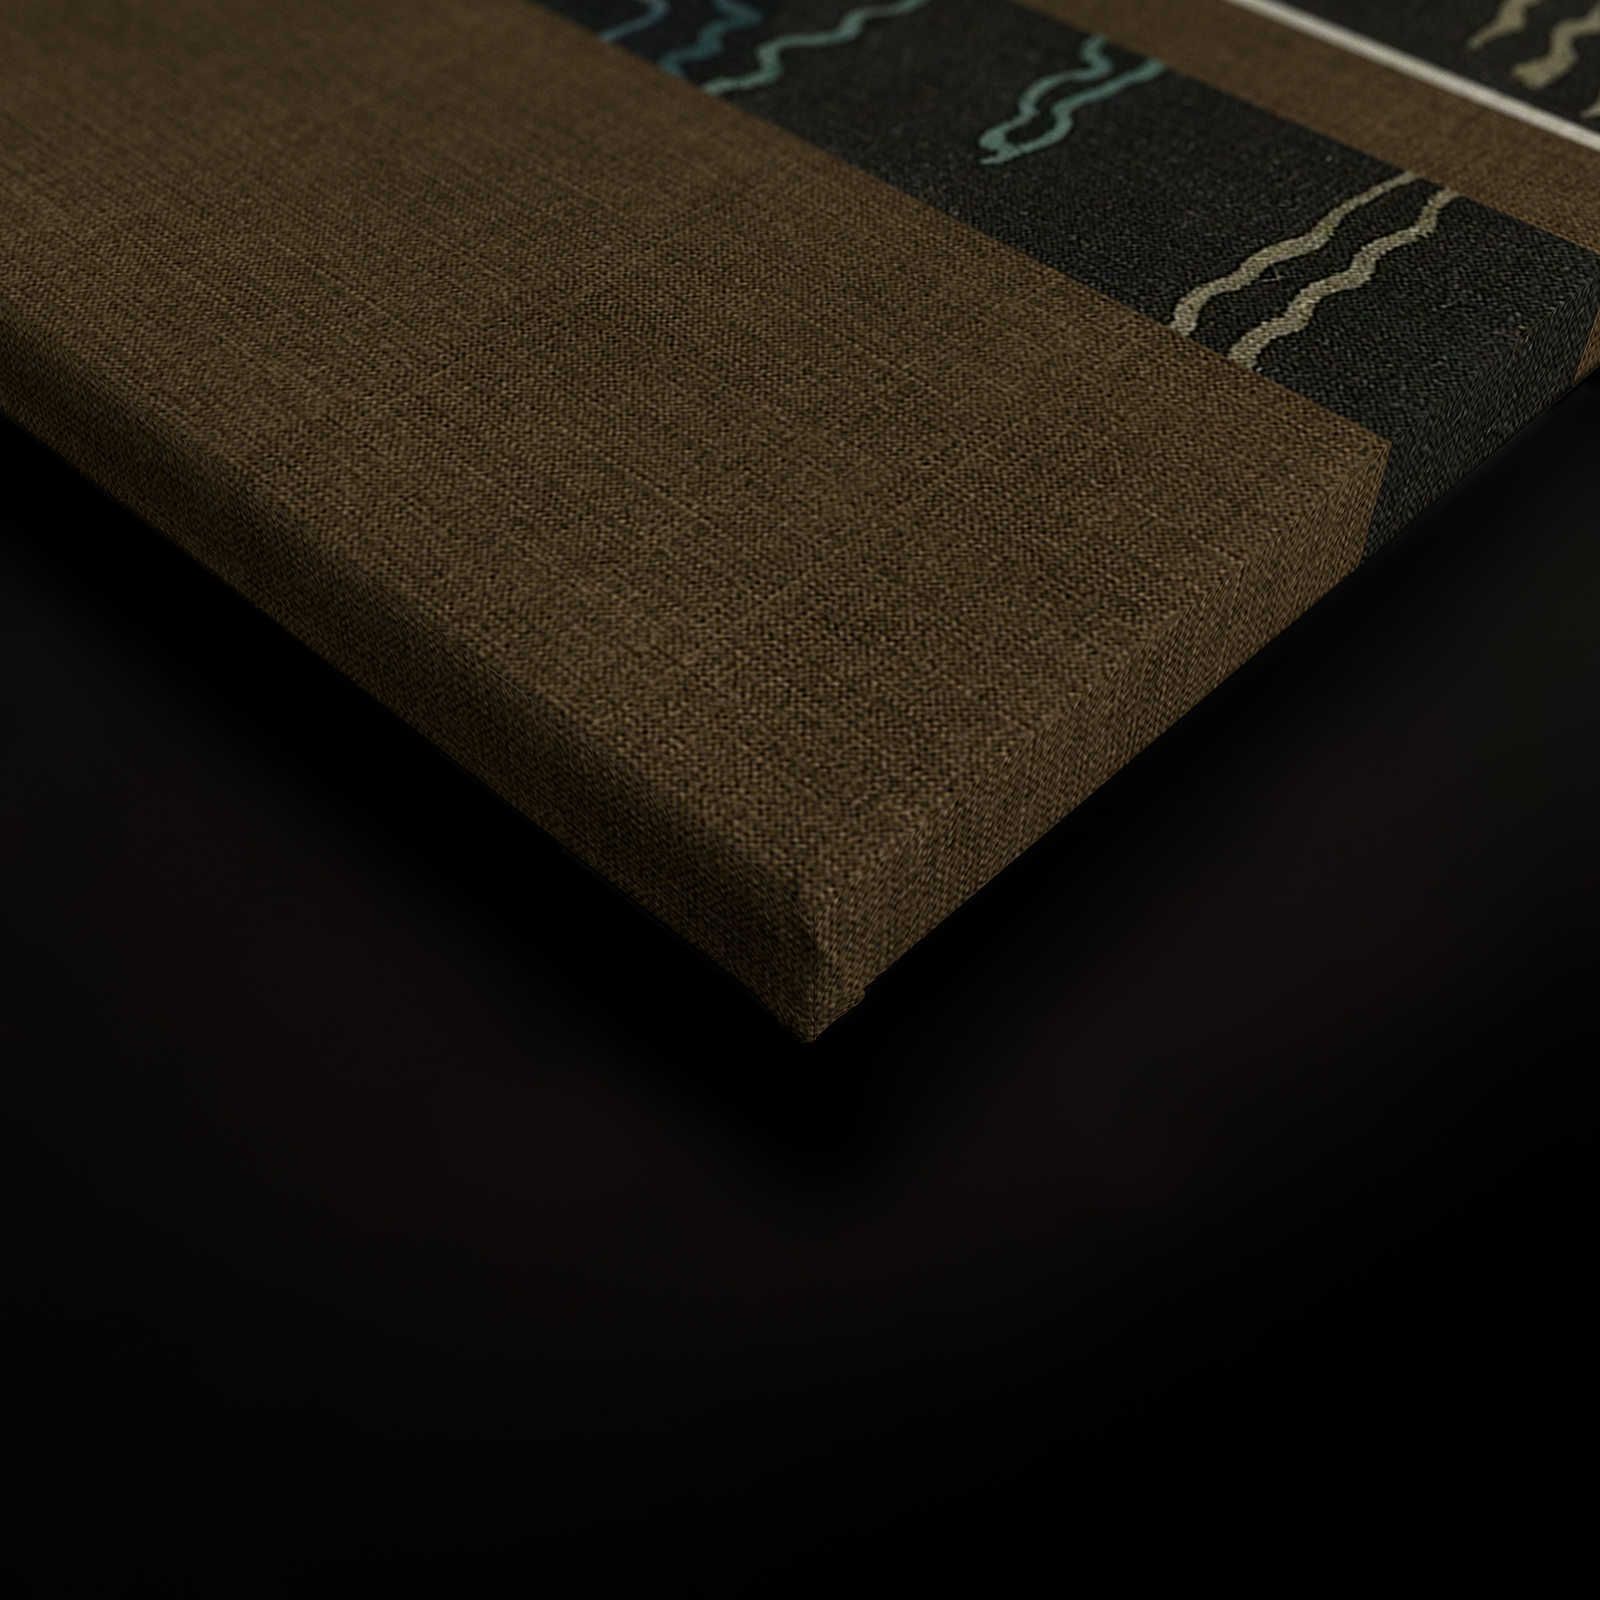             Adlon 4 - Quadro su tela nero-marrone dal design retrò asiatico - 1,20 m x 0,80 m
        